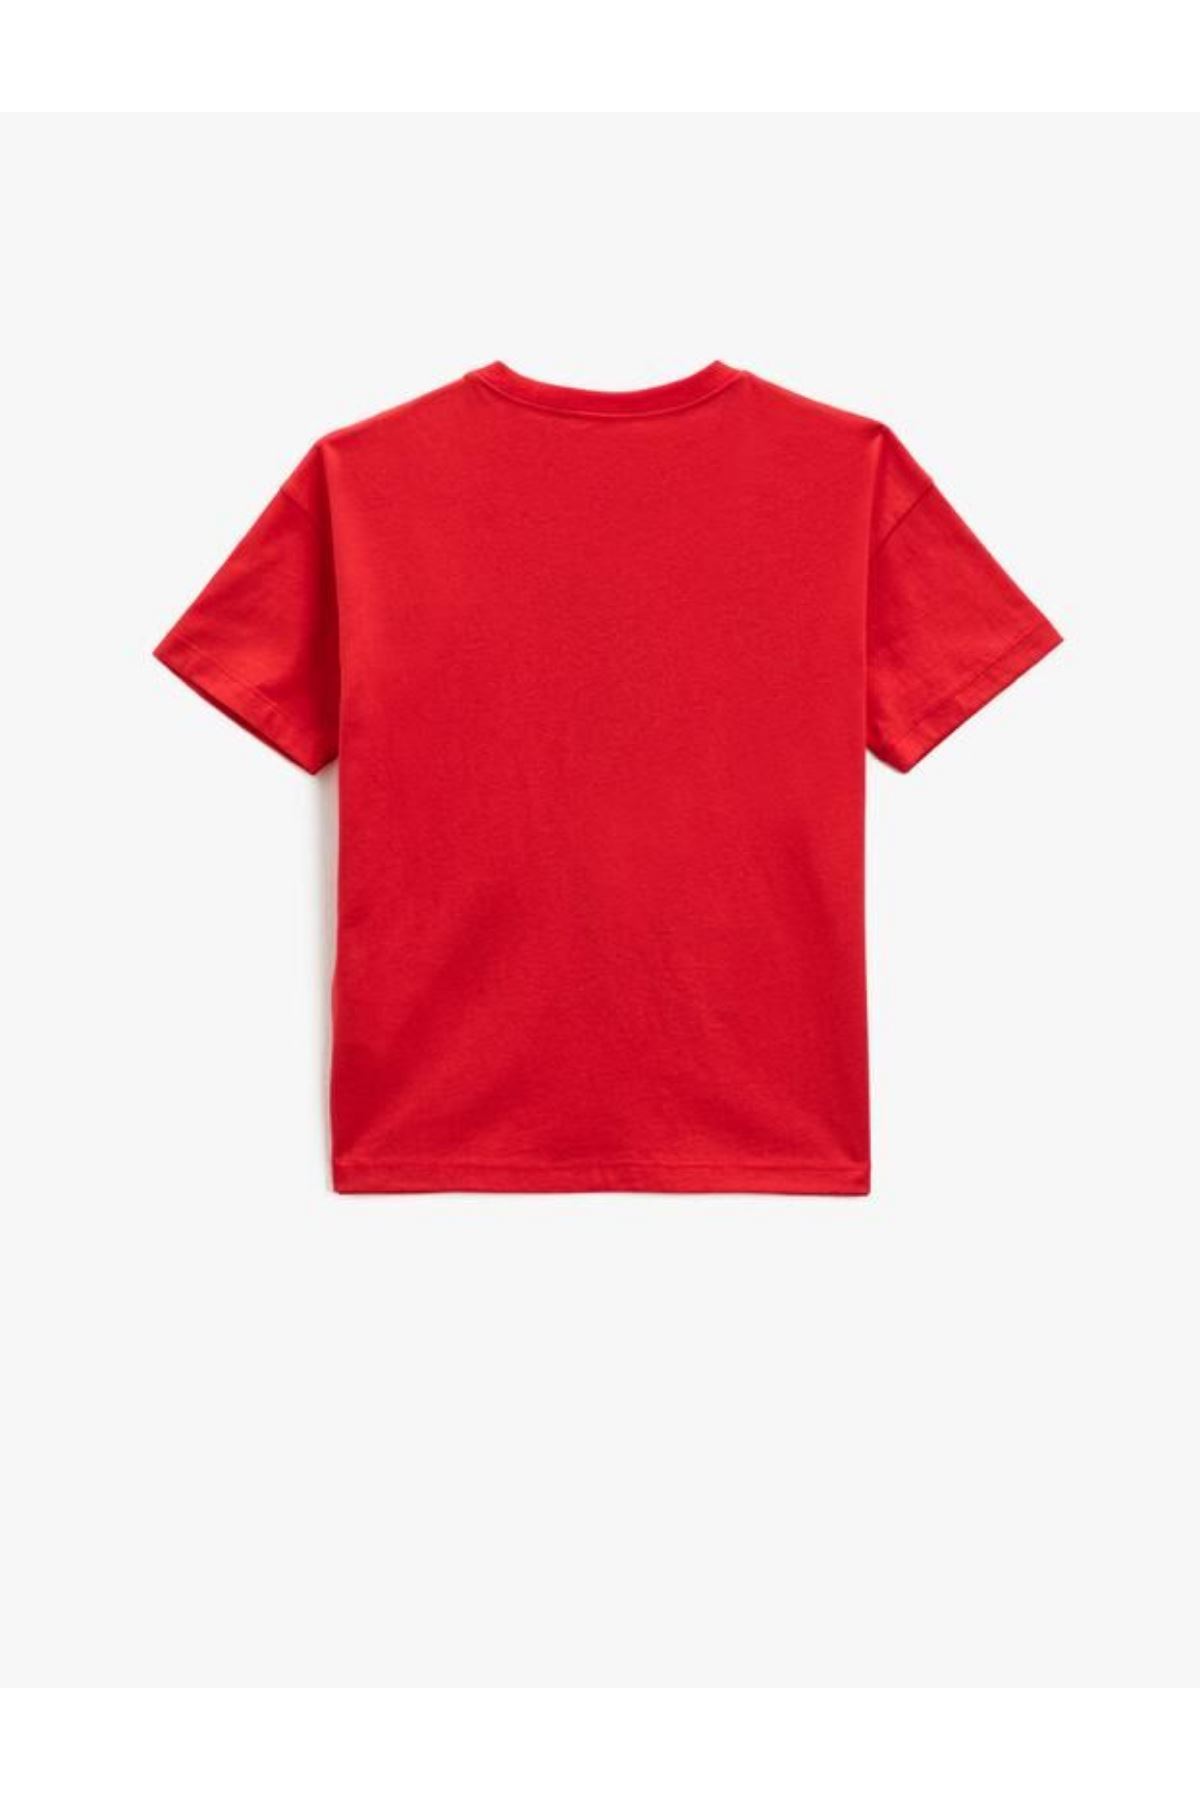 Koton Erkek Çocuk Kırmızı Tişört - 3SKB10245TK